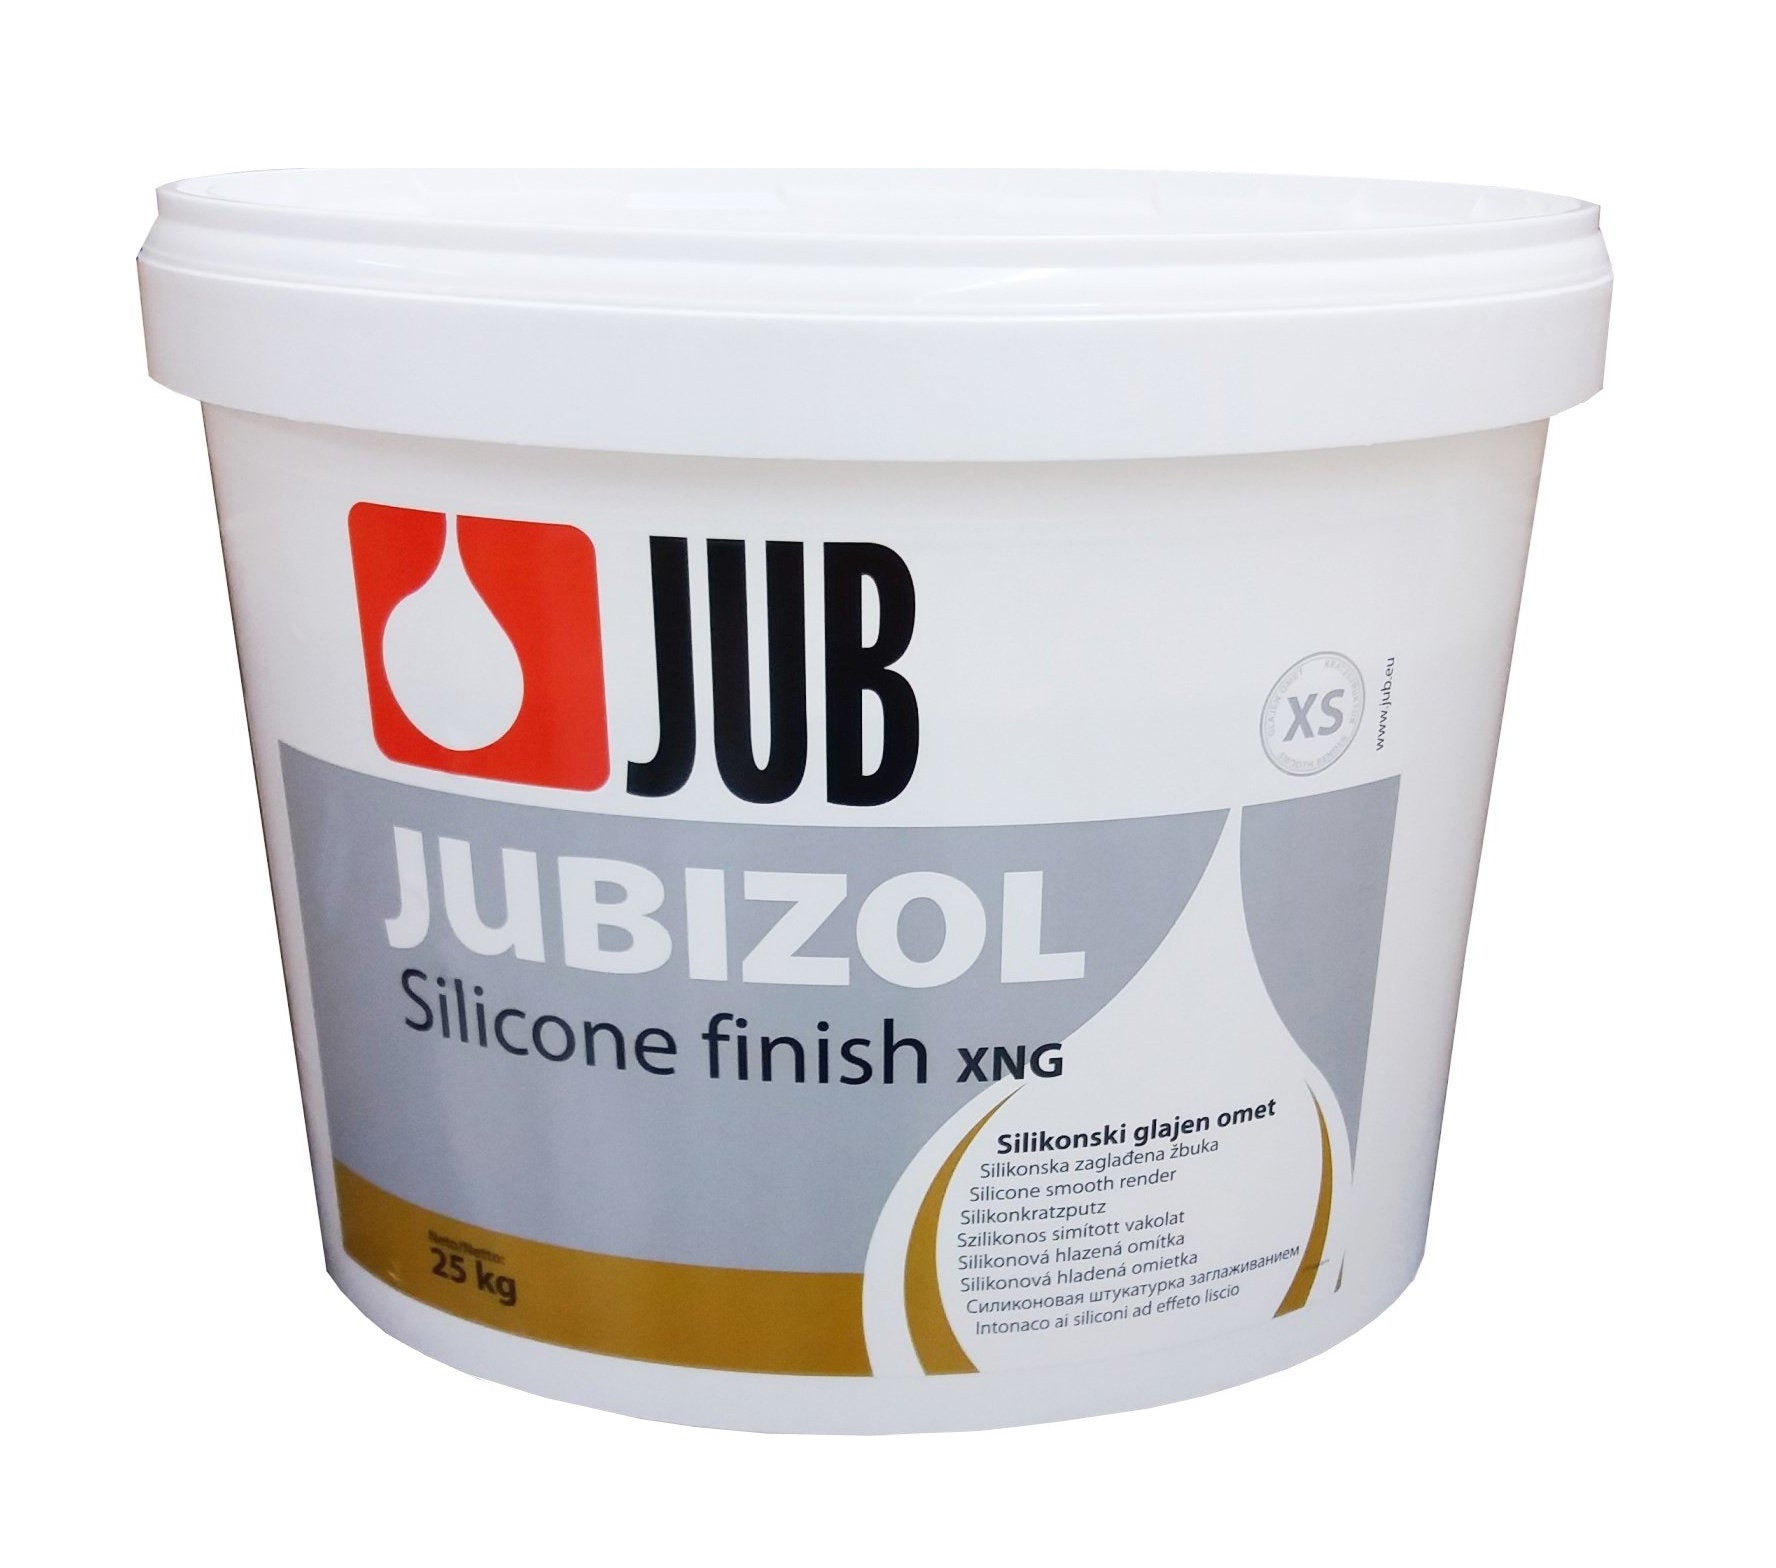 JUB JUBIZOL Silicone finish XS silikonová hlazená omítka 25 kg